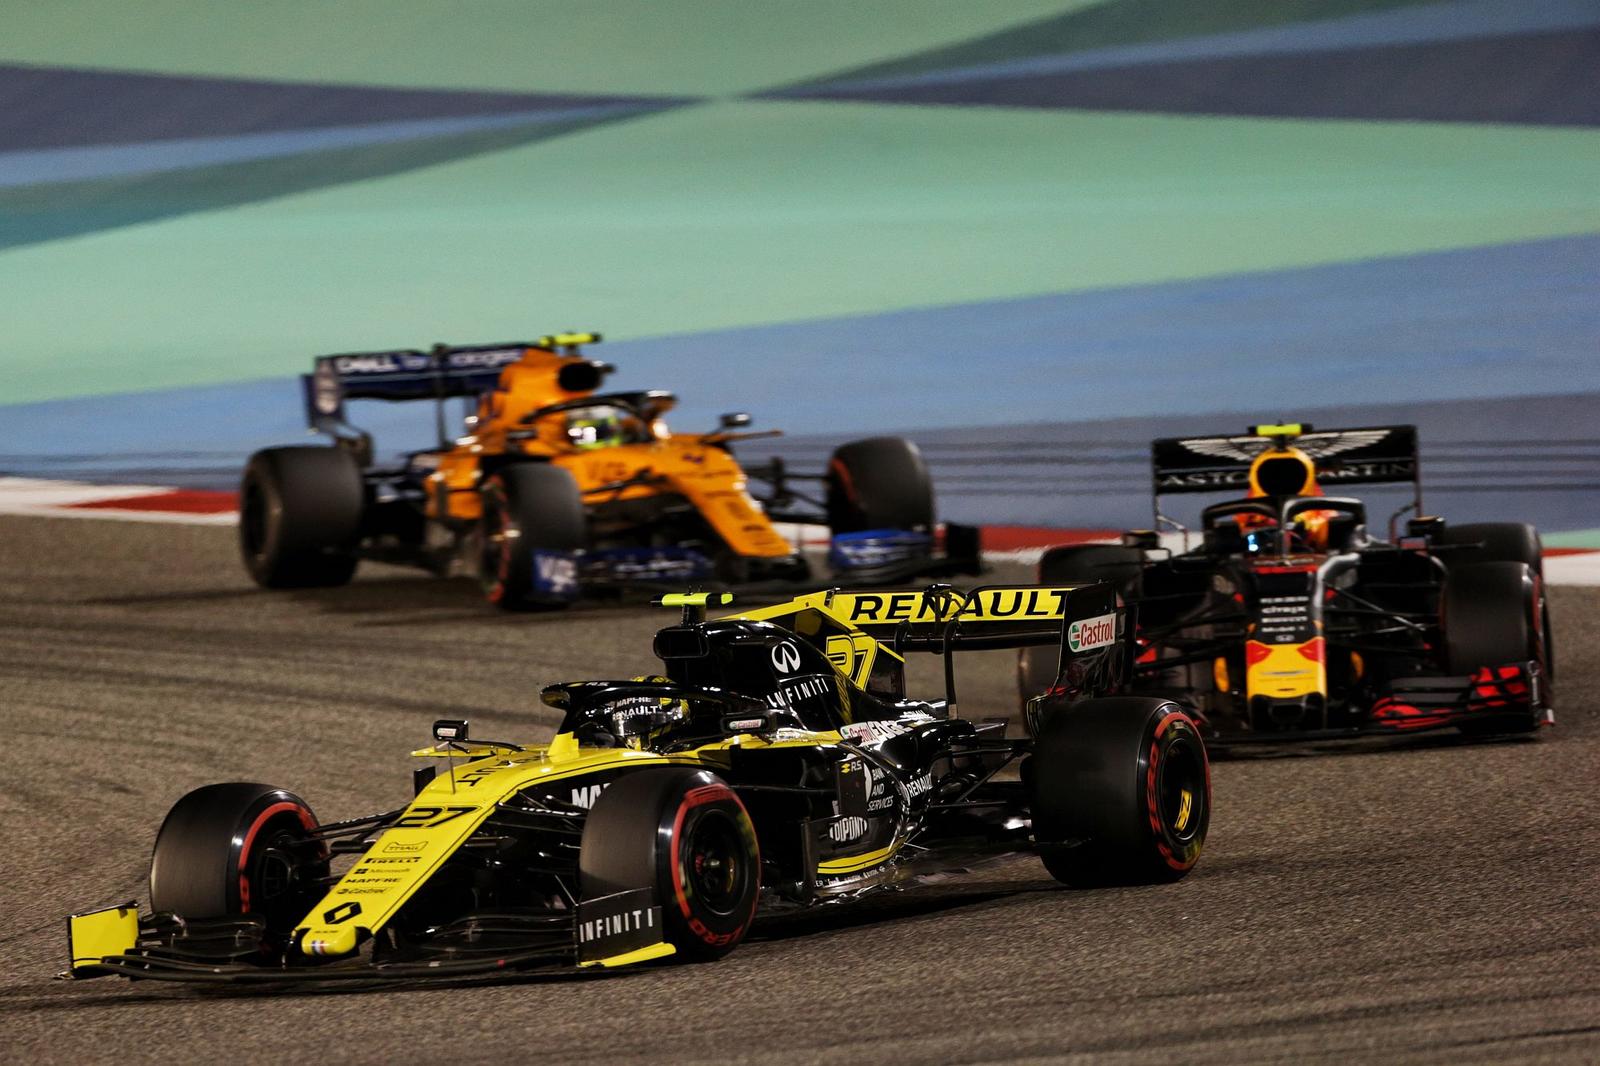 Grand Prix de Formule 1 de Bahreïn 2019